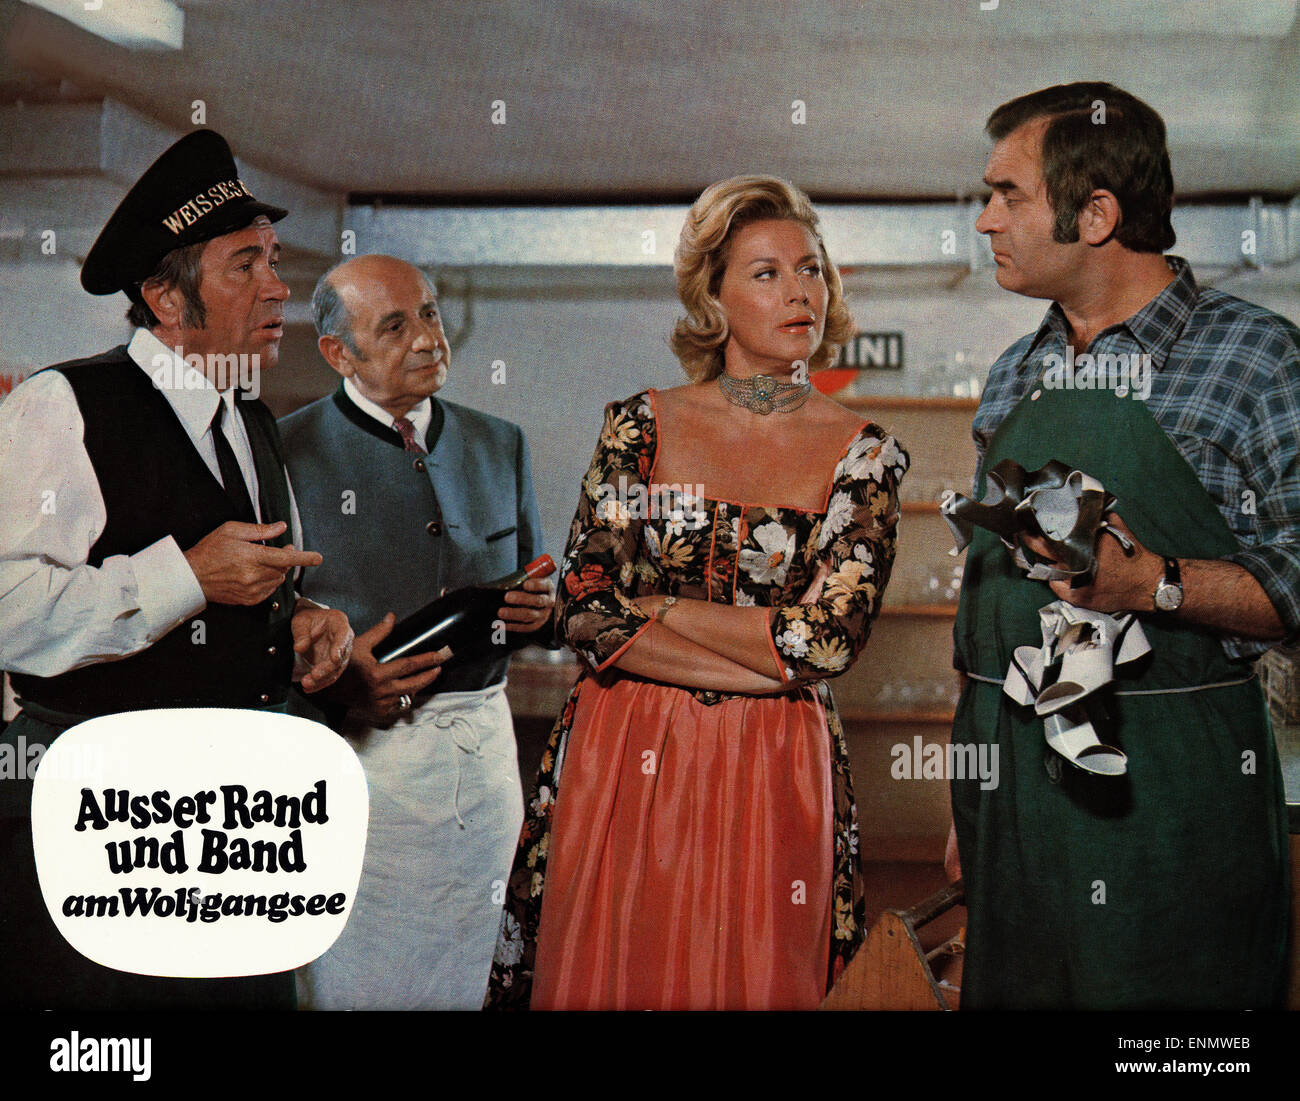 Ausser Rand und Band am Wolfgangsee, Deutschland 1972, Regie: Franz Antel, Darsteller: Franz Muxeneder, Waltraut Haas Stock Photo